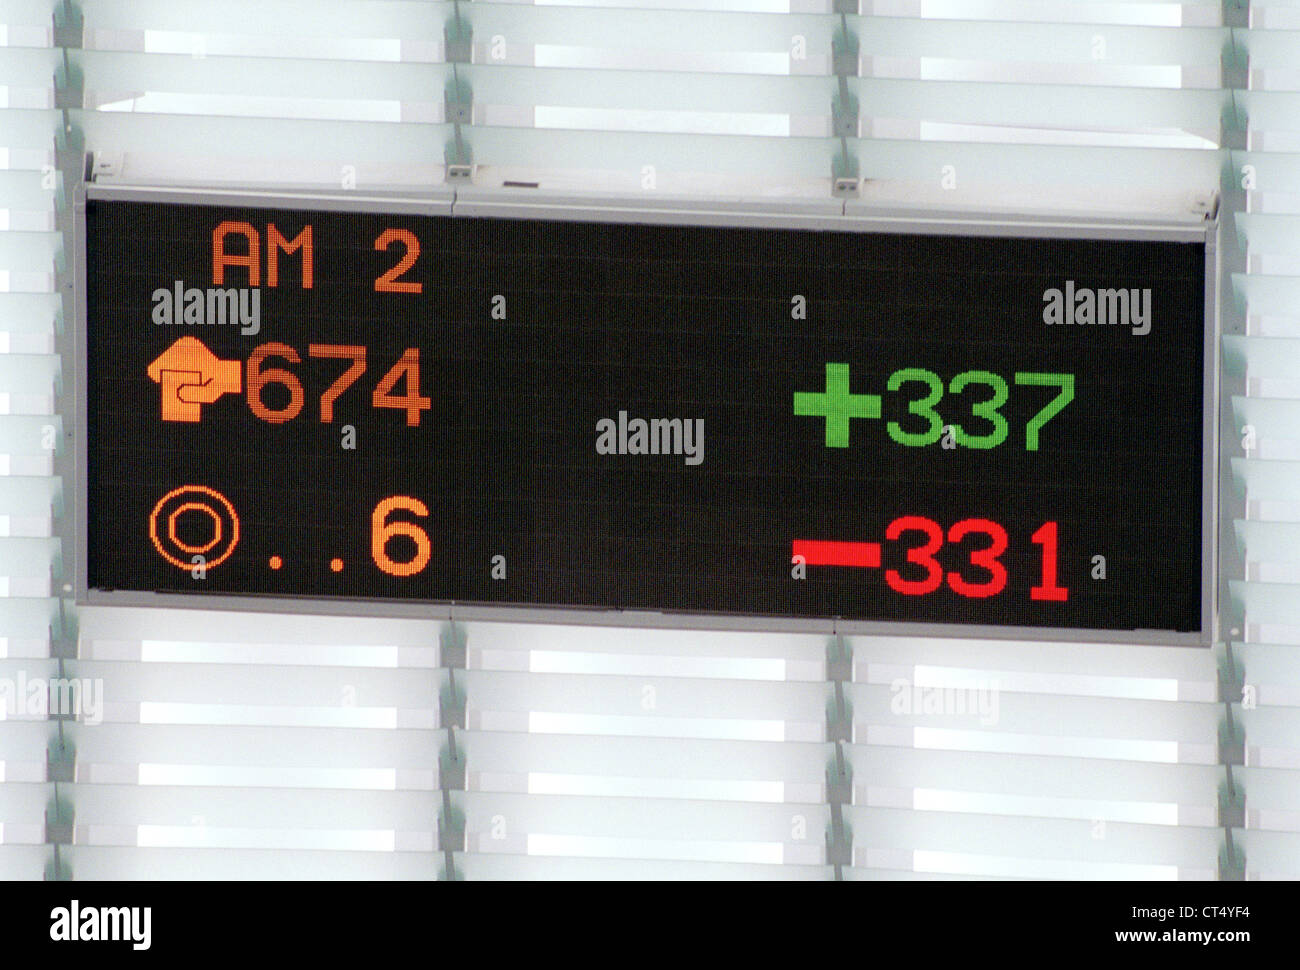 Estrasburgo, el cuadro de indicadores de los resultados de las elecciones en el Parlamento de la UE Foto de stock